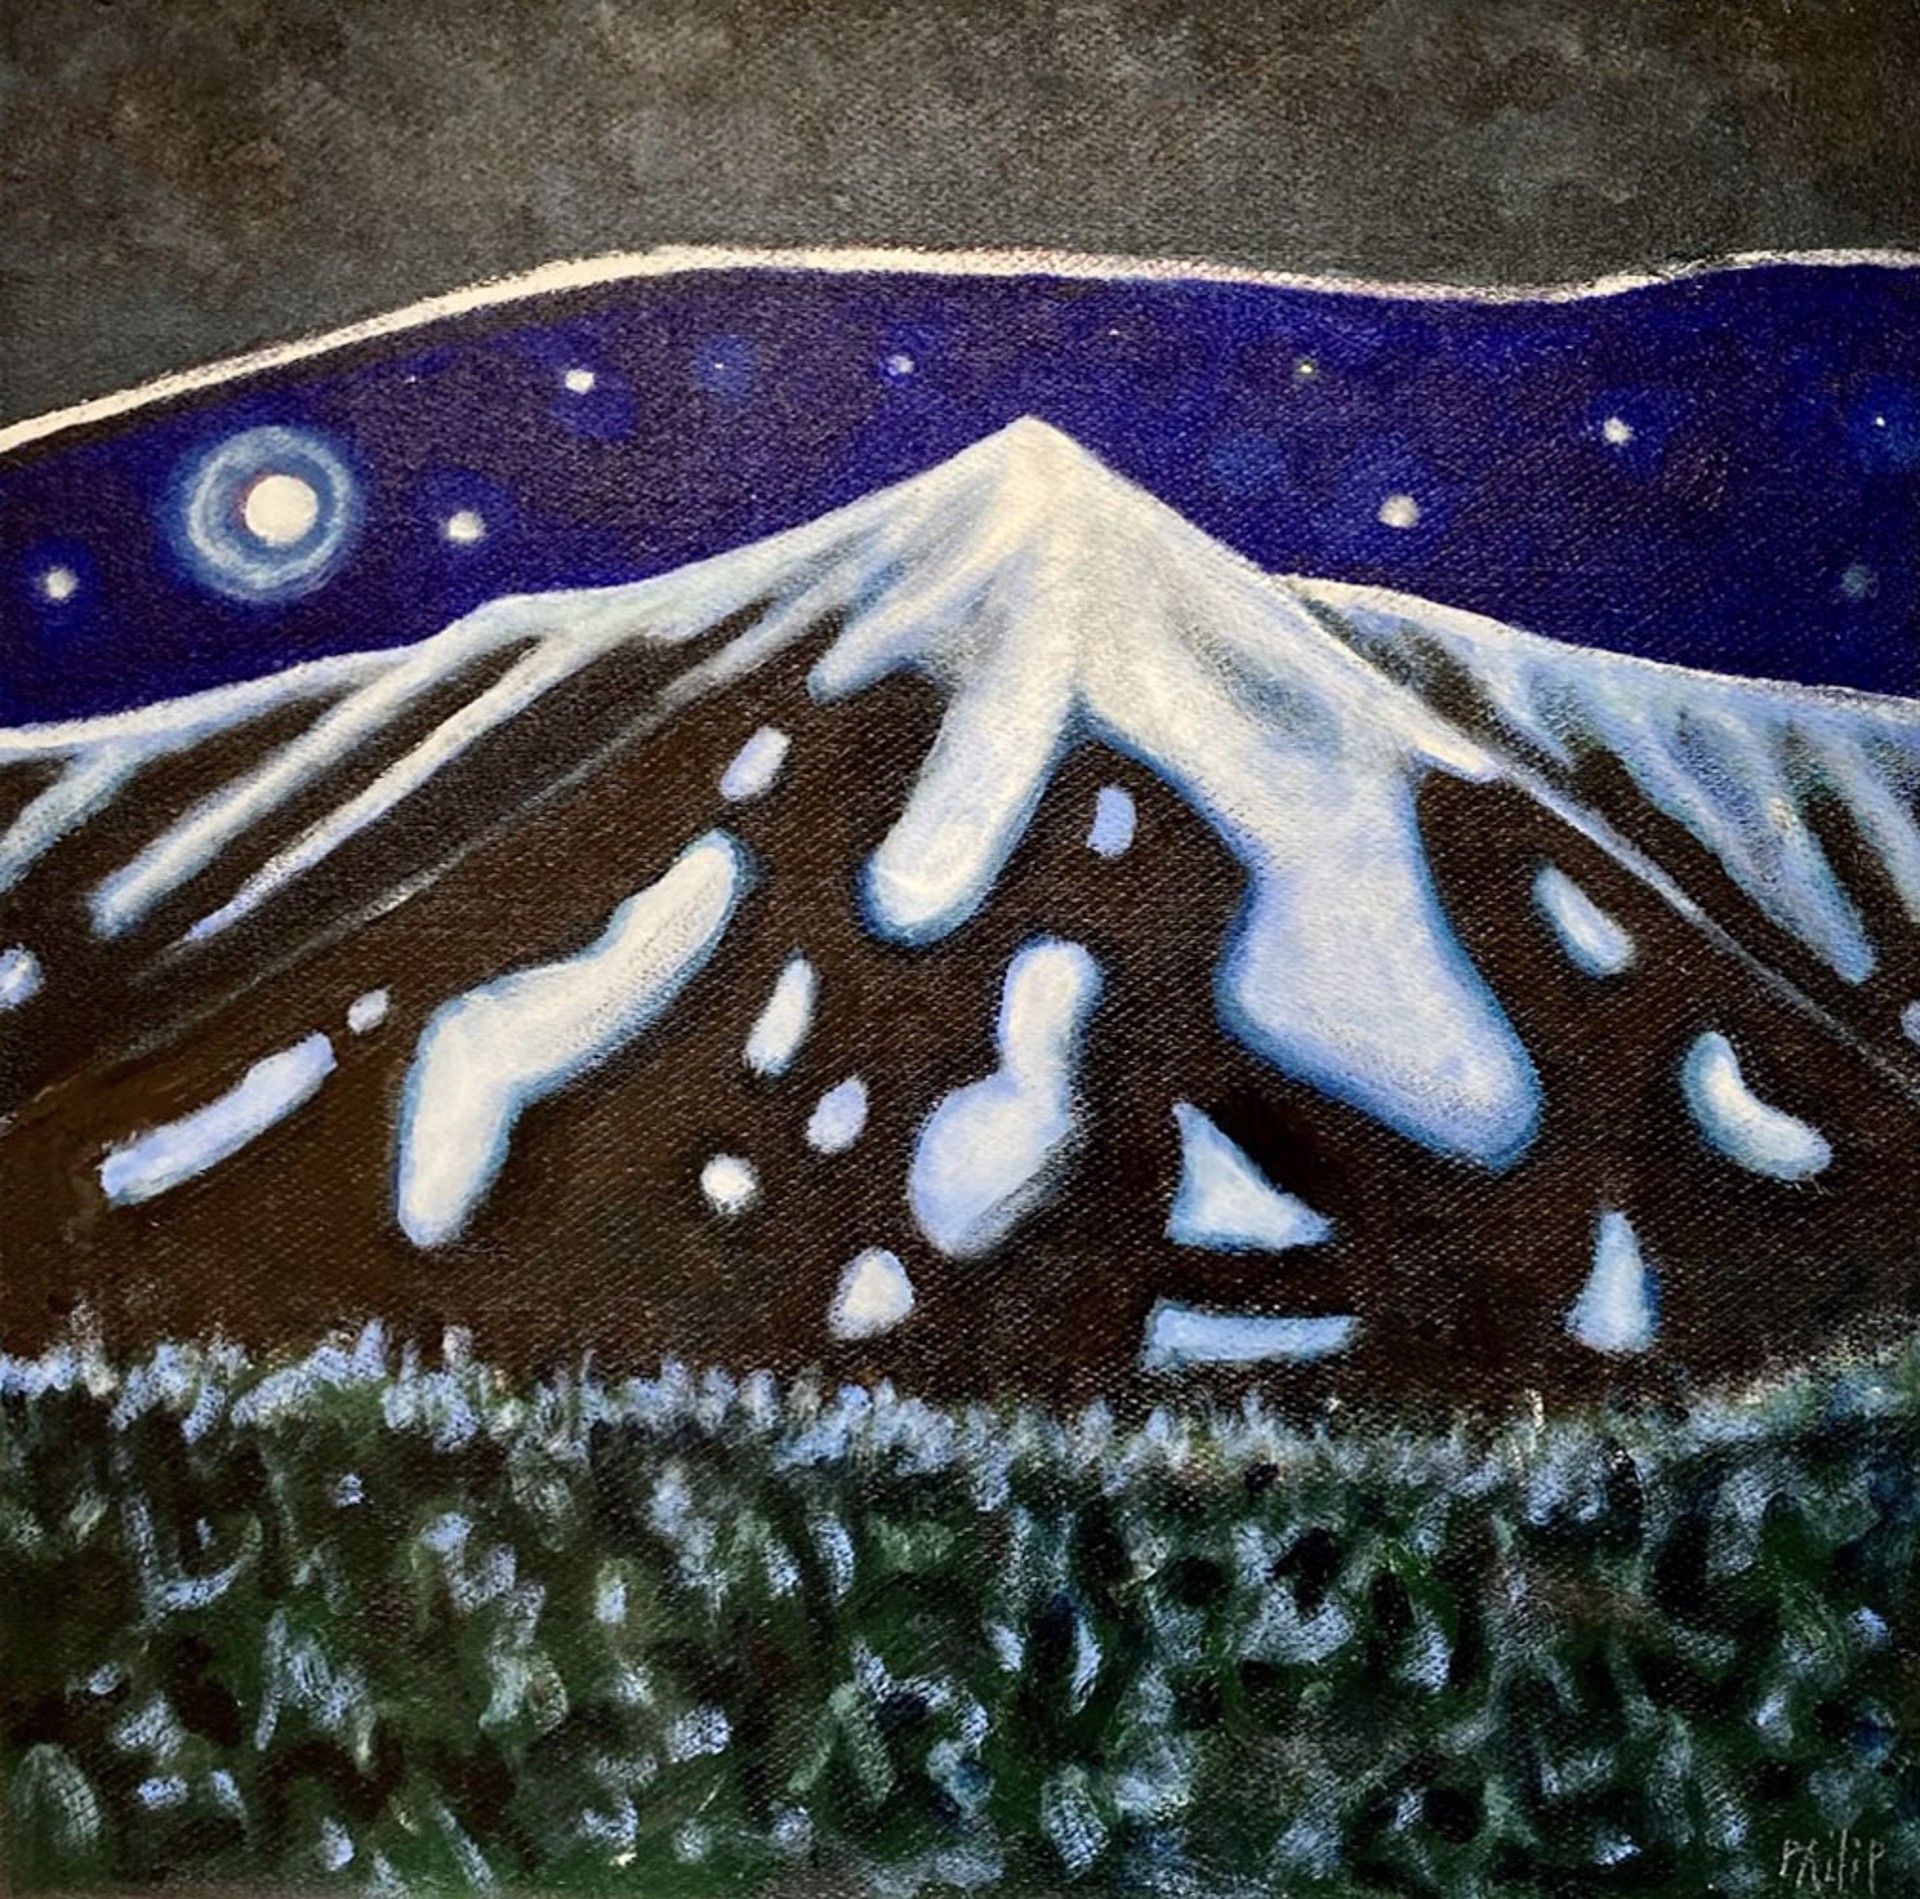 Winter Moon (Mt. Katahdin) by Philip Barter